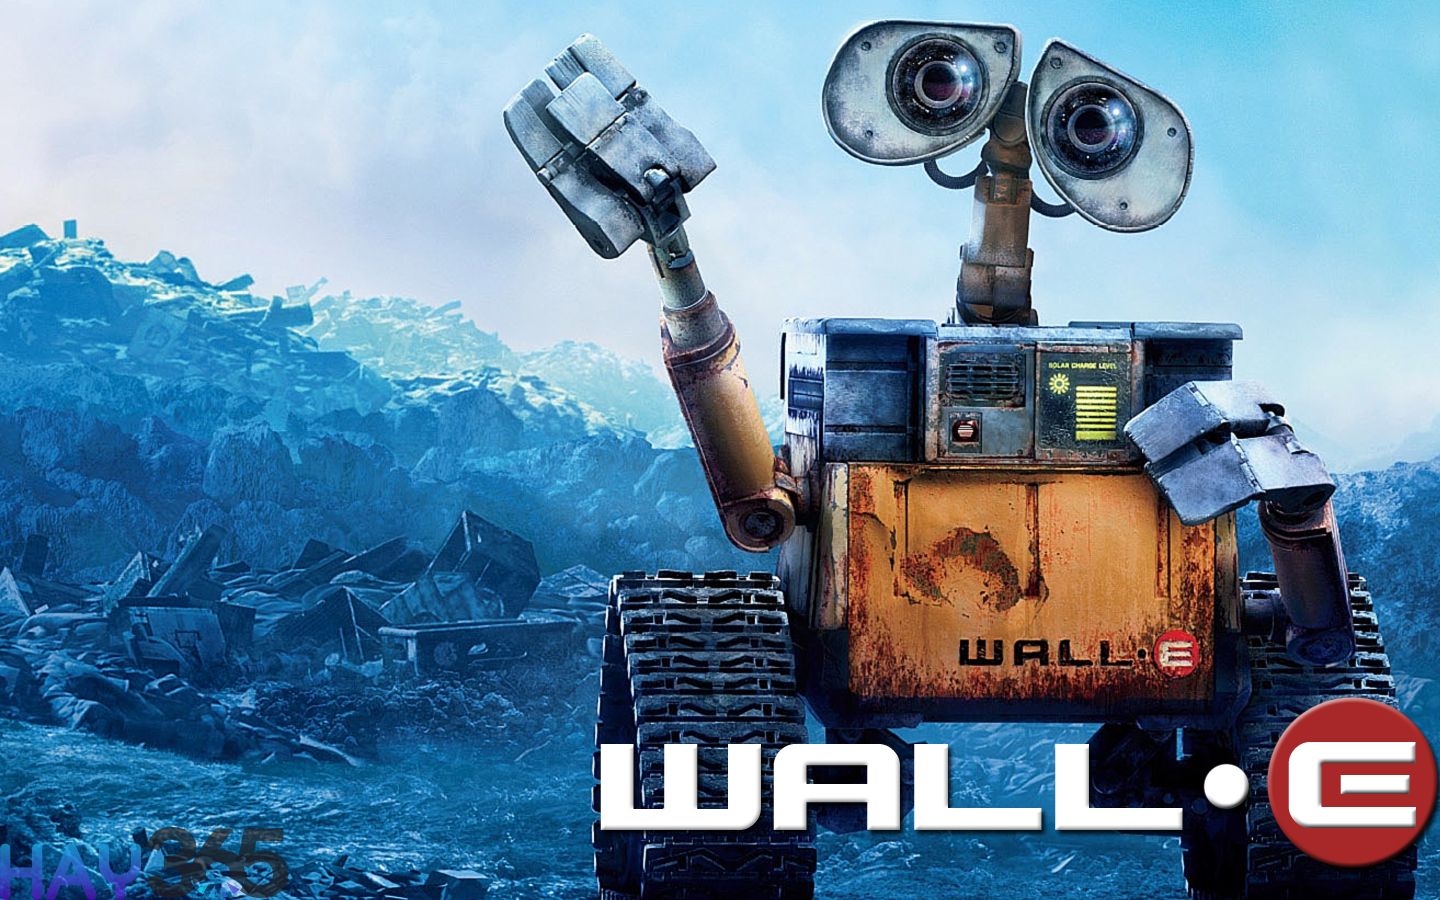 Wall-E là bộ phim hoạt hình hay nhất mọi thời đại về tình yêu và khai thác vấn đề bảo vệ môi trường